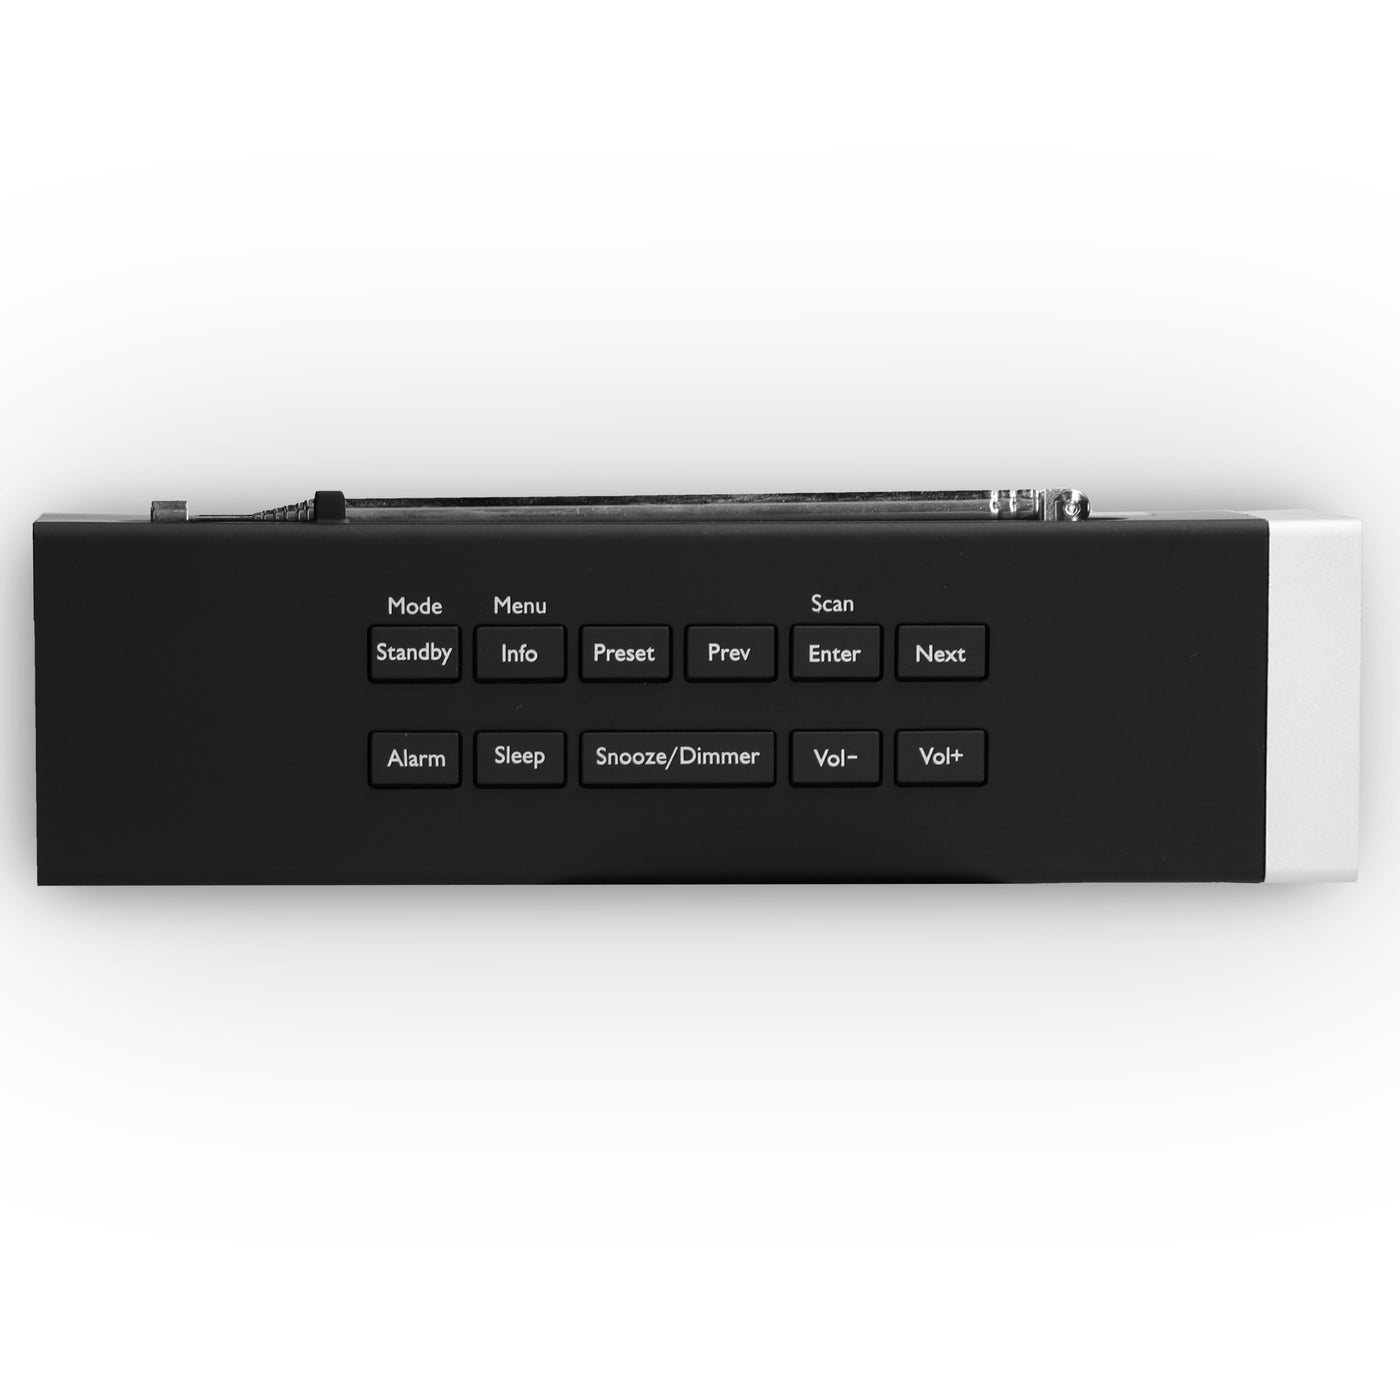 LENCO CR-630BK - Radiobudzik stereo DAB+/FM z portem USB i wejściem AUX - Czarny